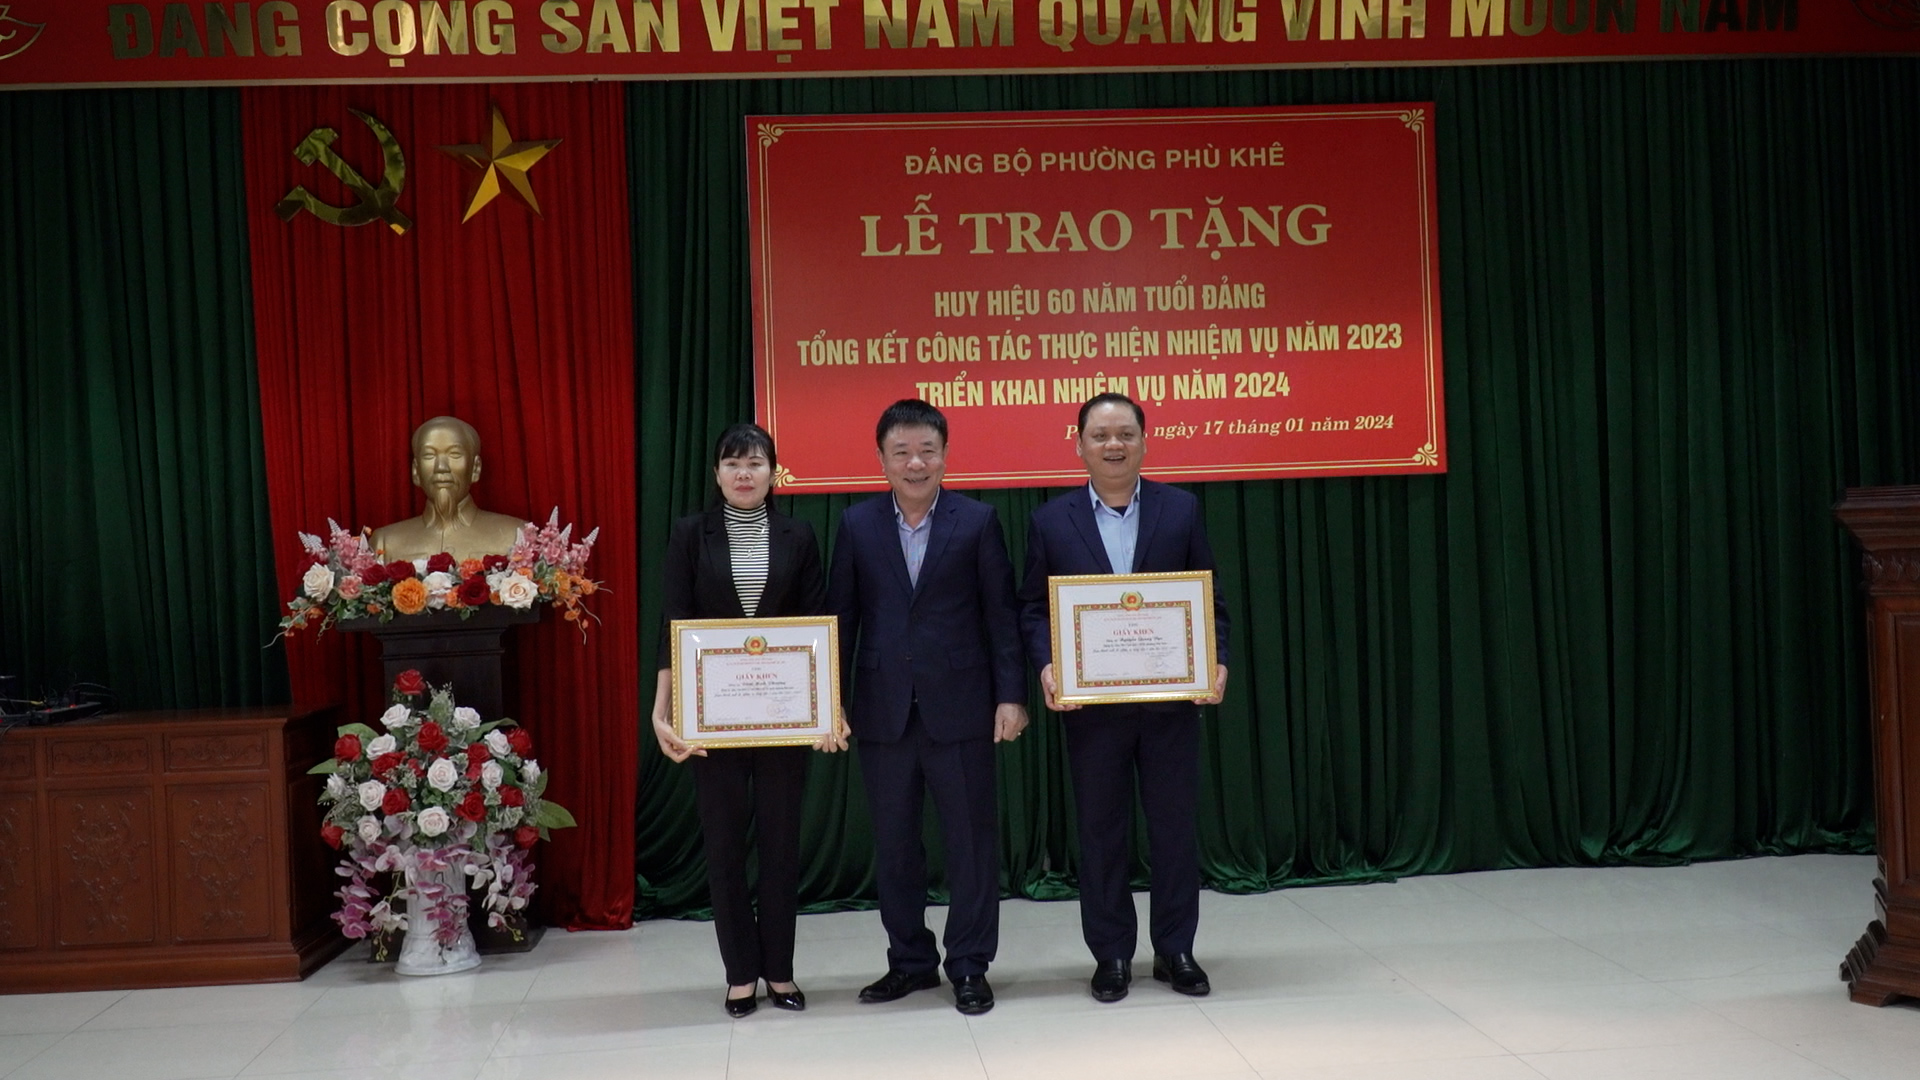 Đảng bộ phường Phù Khê trao tặng huy hiệu Đảng và triển khai nhiệm vụ năm 2024